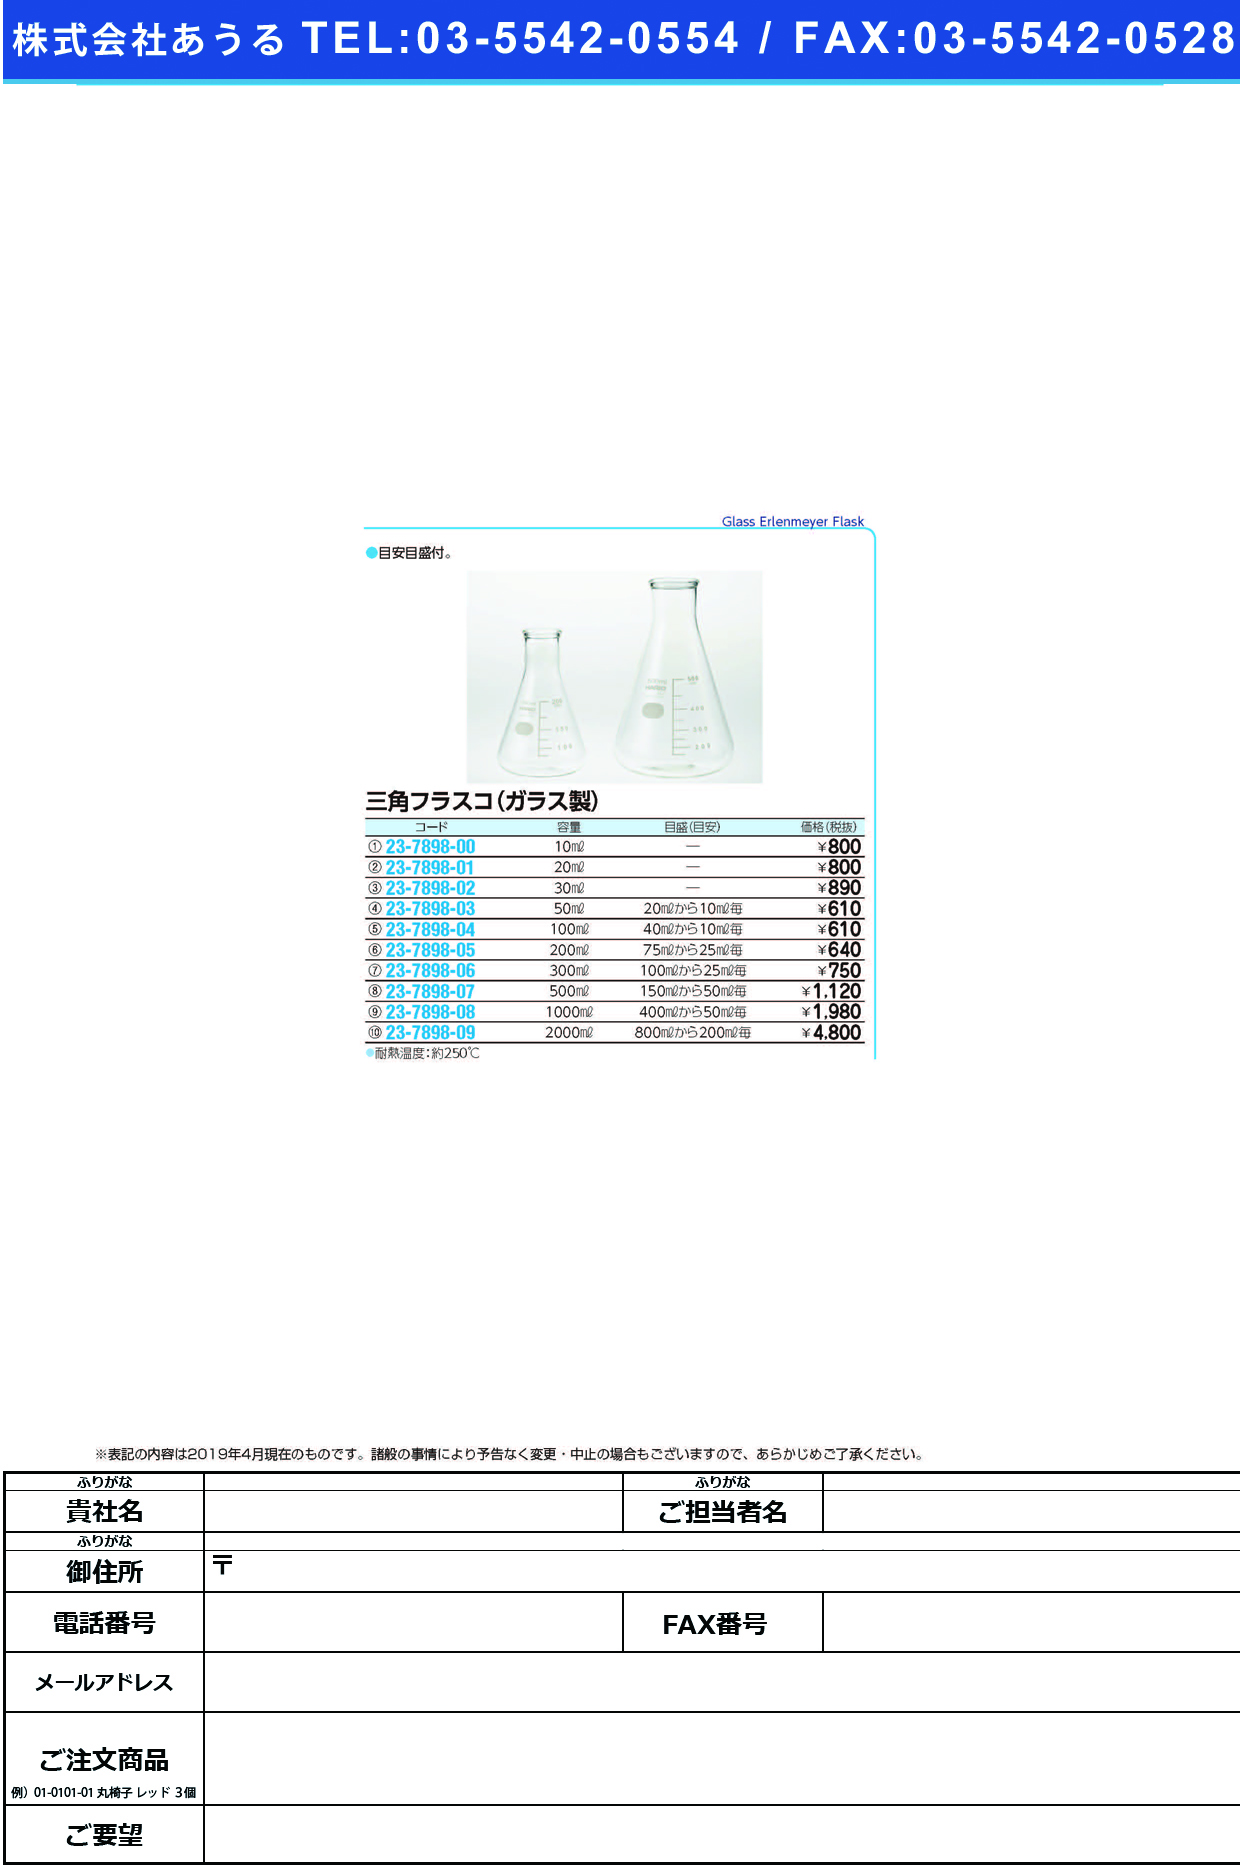 (23-7898-09)三角フラスコ（ガラス製） 2000ML ｻﾝｶｸﾌﾗｽｺ(ｶﾞﾗｽｾｲ)【1個単位】【2019年カタログ商品】